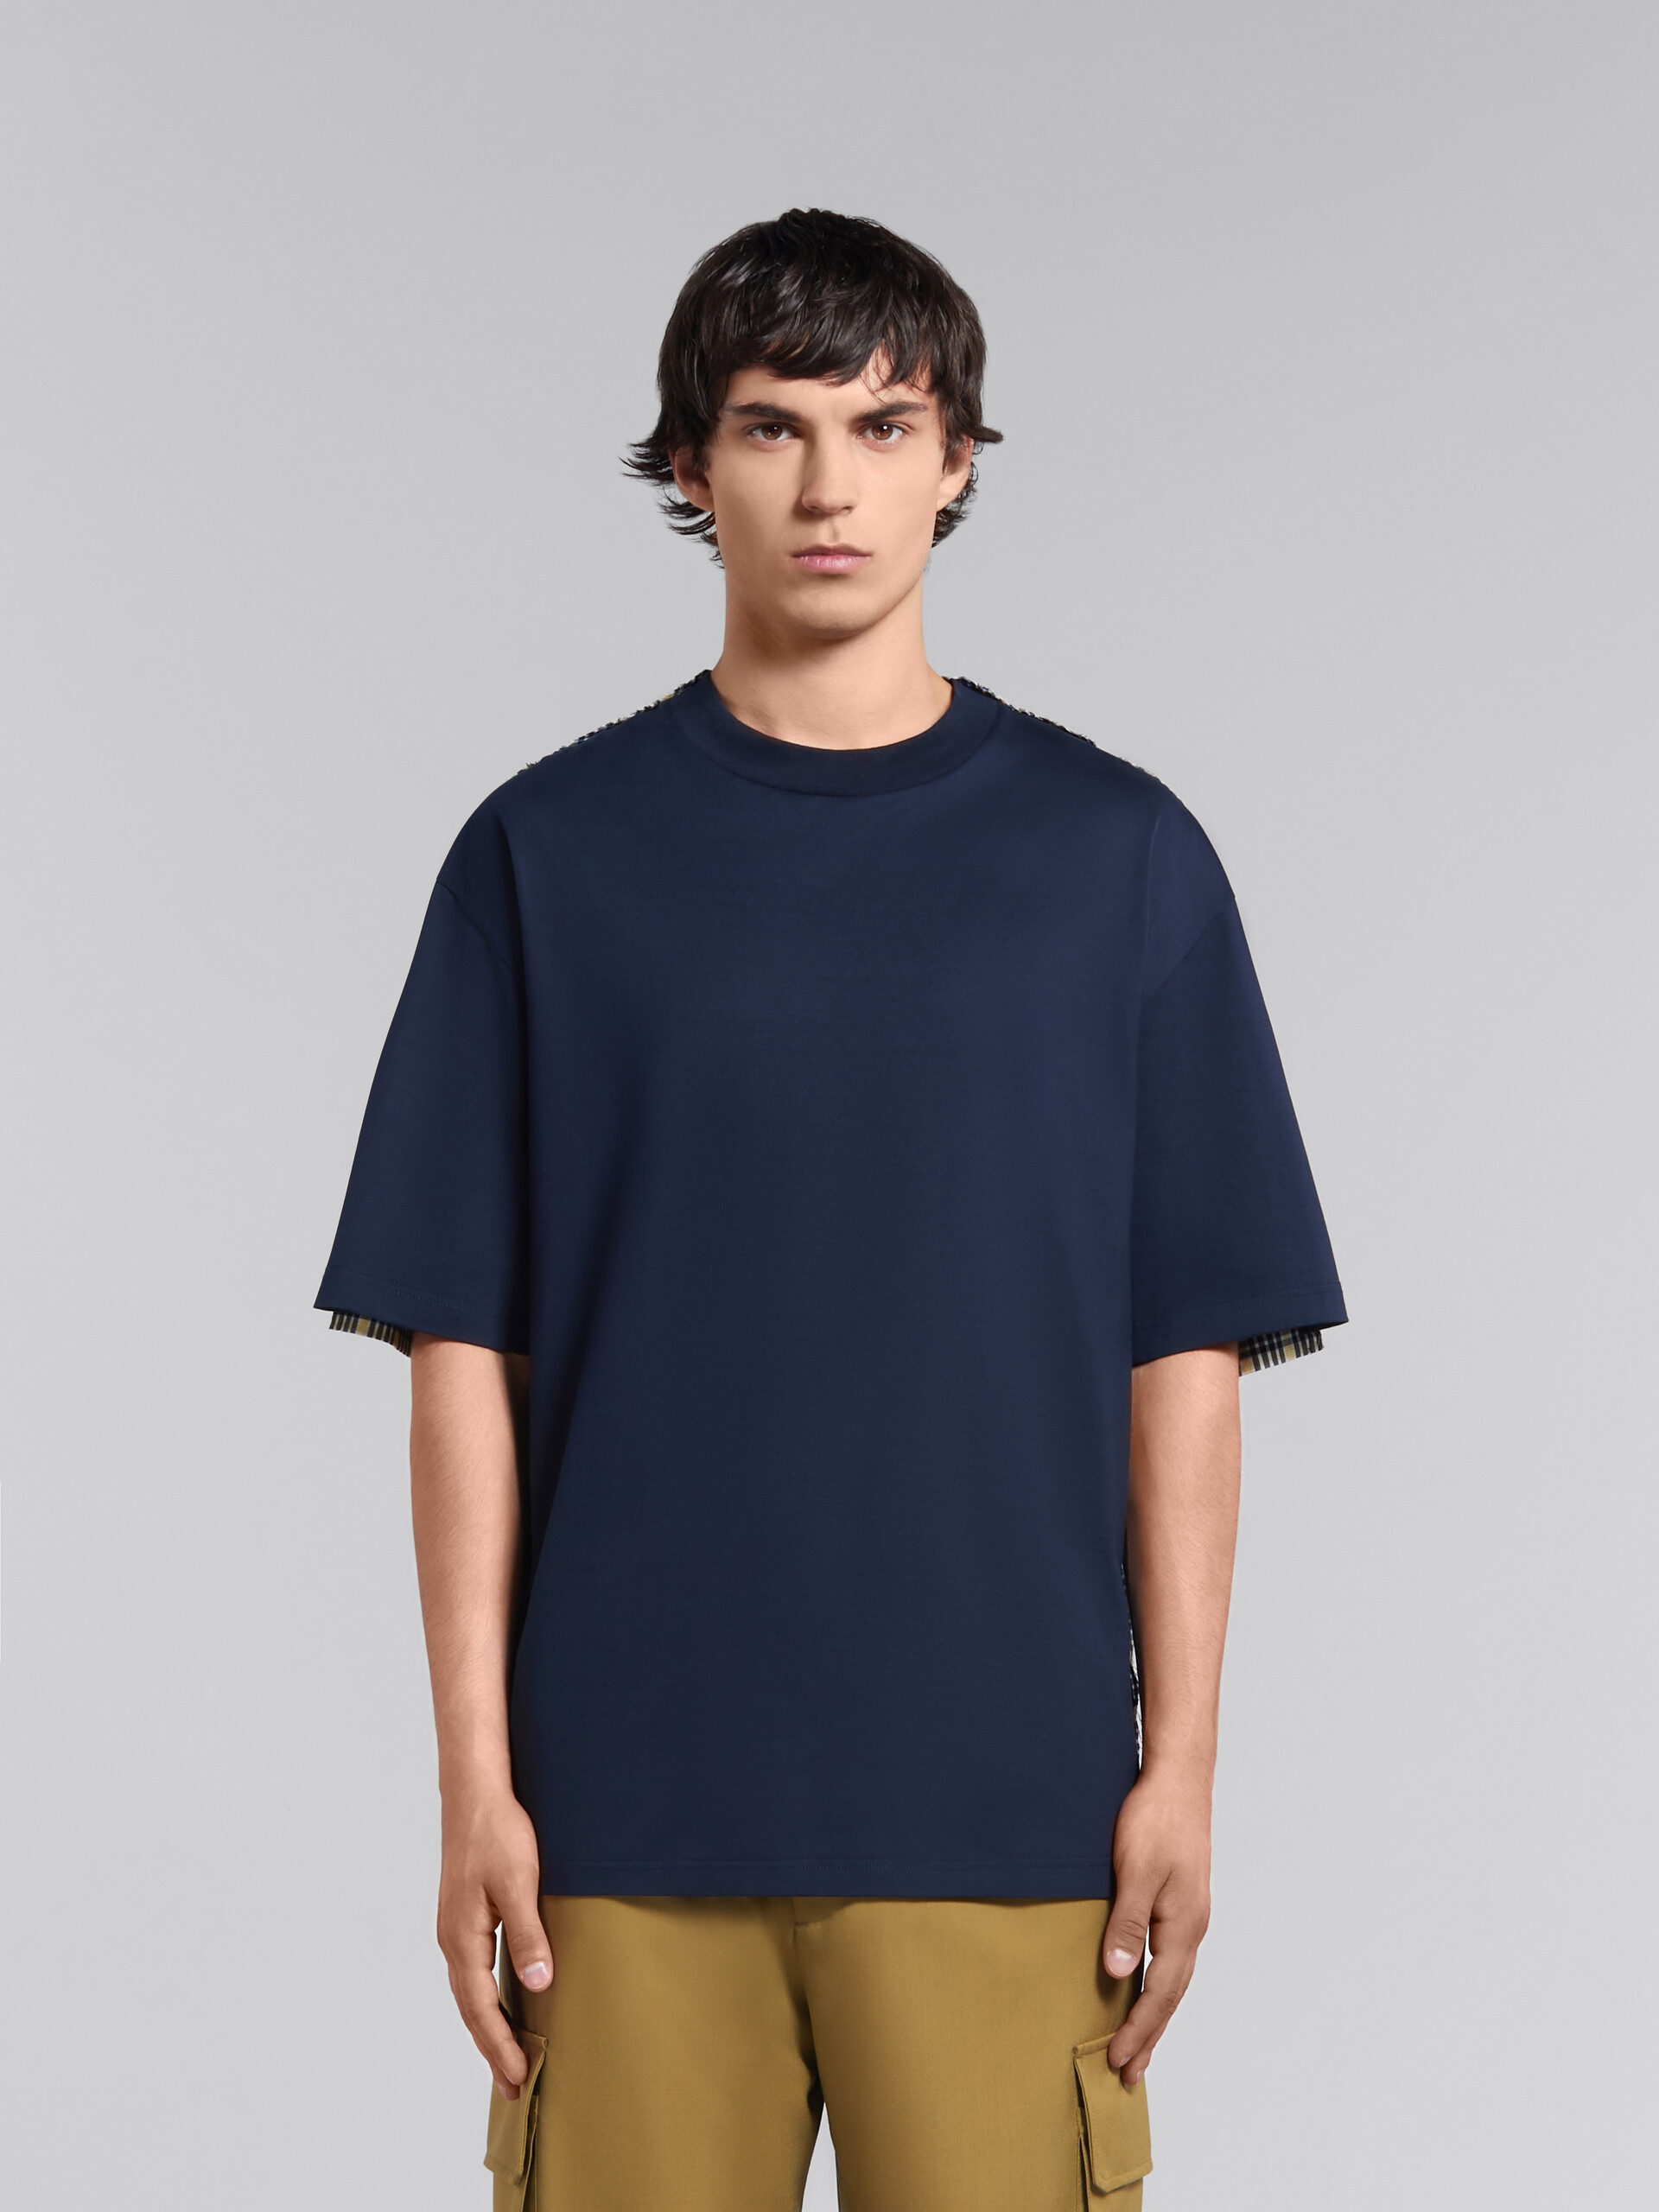 T-shirt in cotone biologico blu scuro con schiena a quadri - T-shirt - Image 2